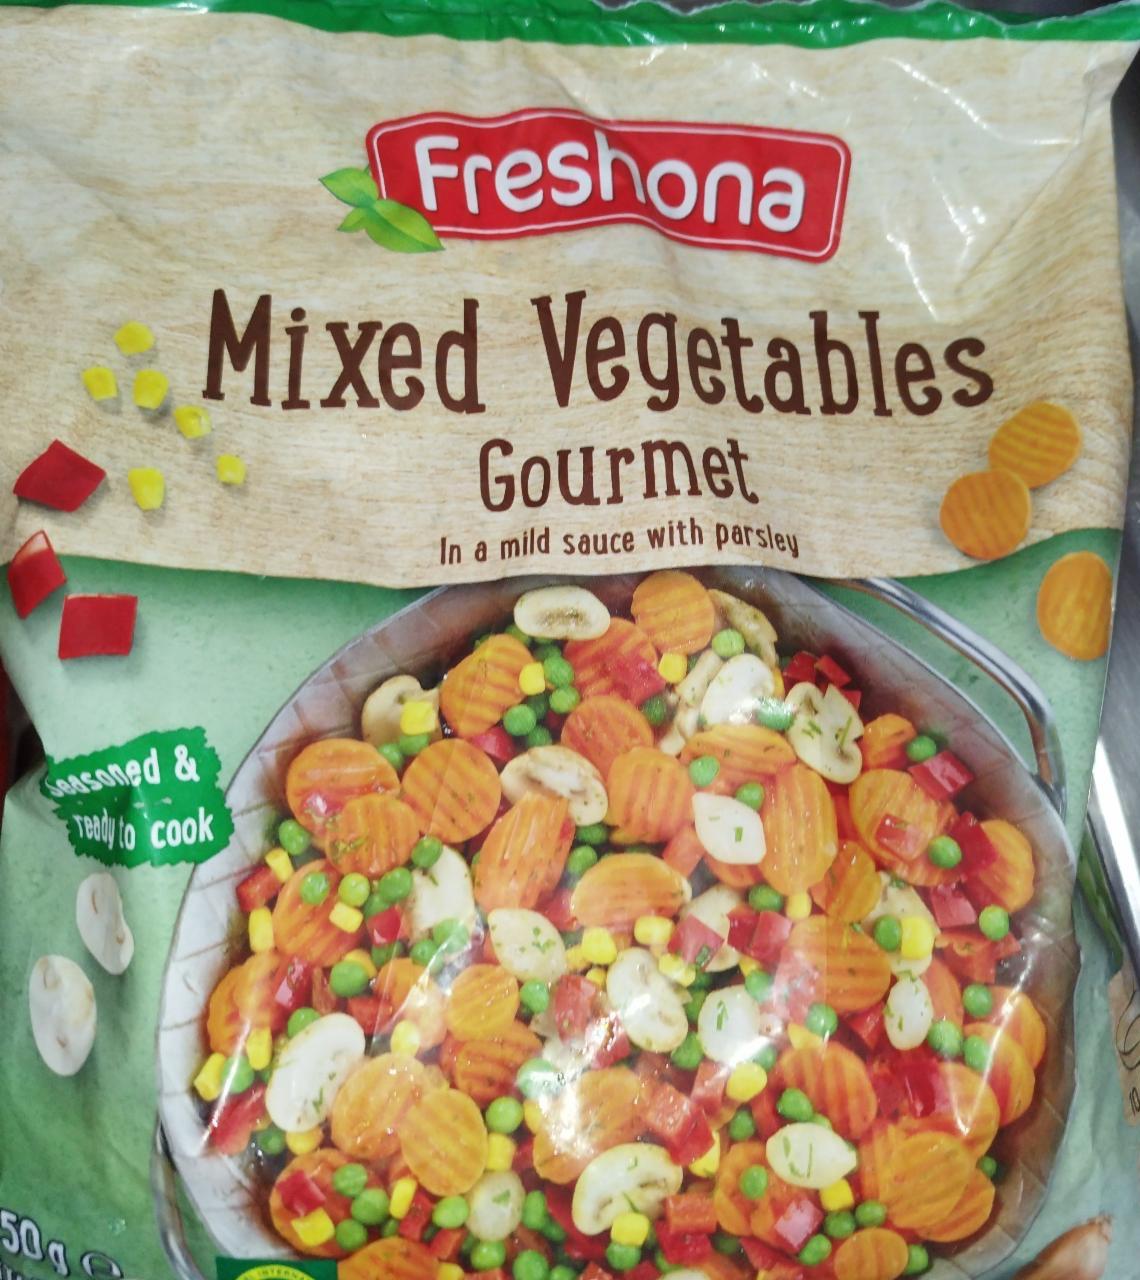 Képek - Mixed vegetables Gourmet Freshona